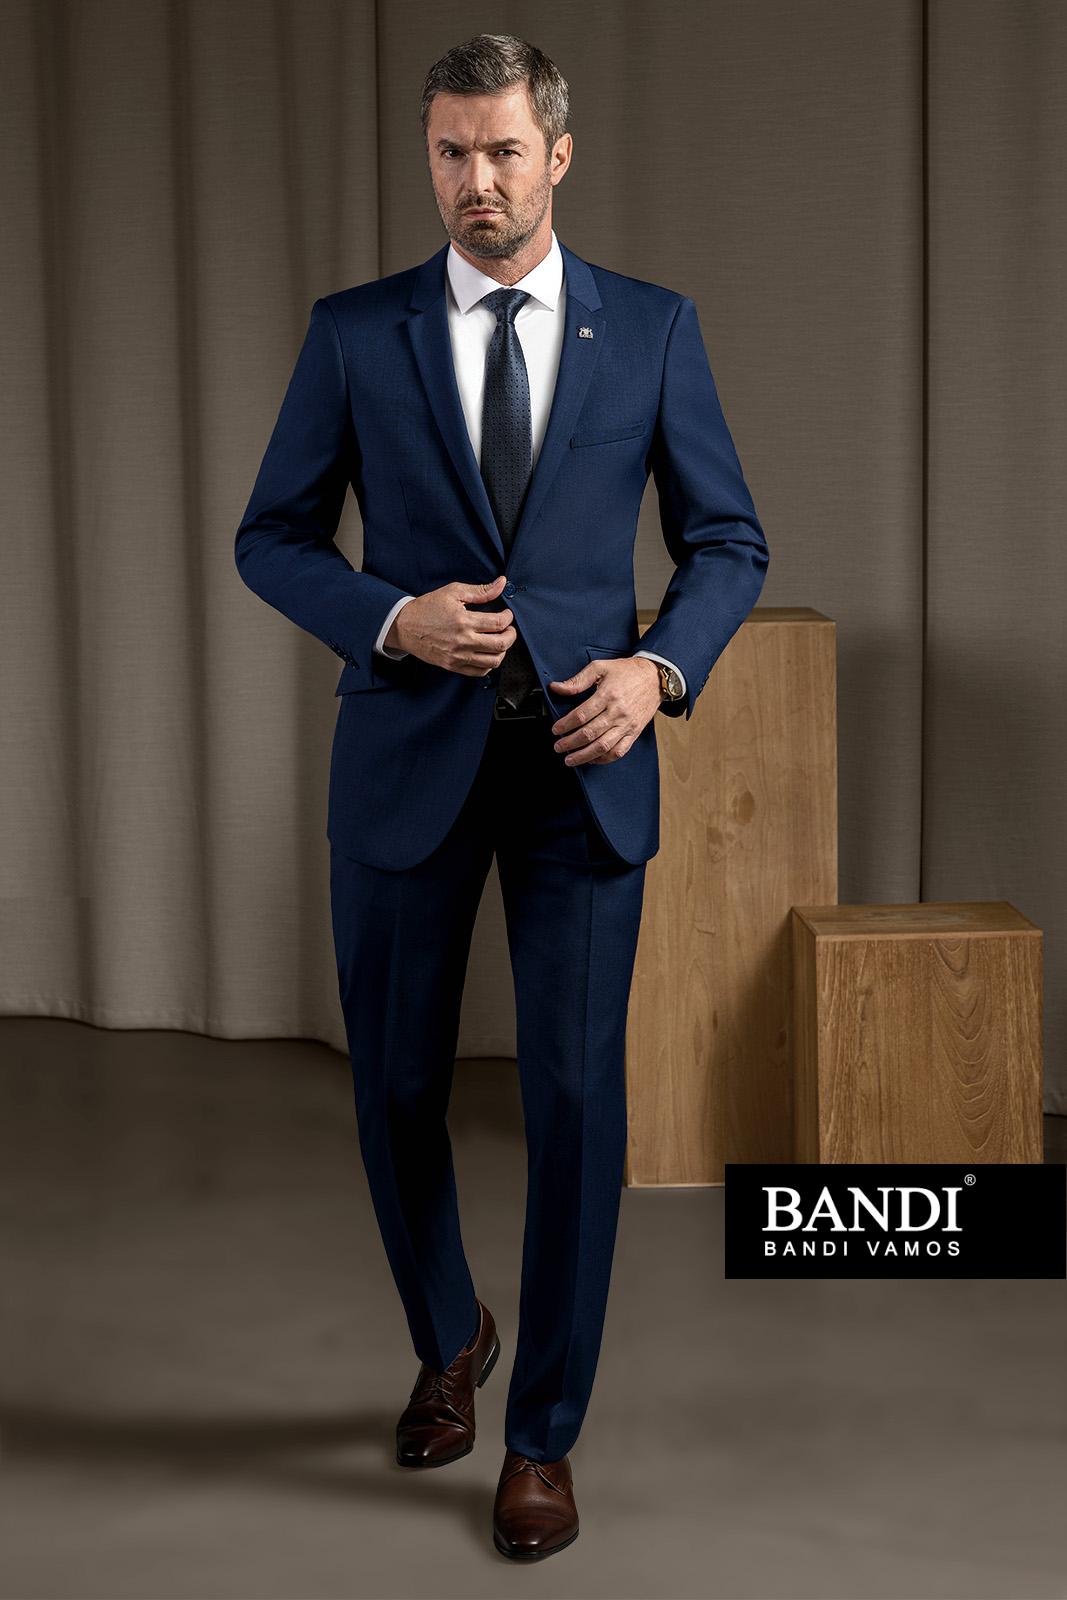 Pánský oblek BANDI, model Bocaneli